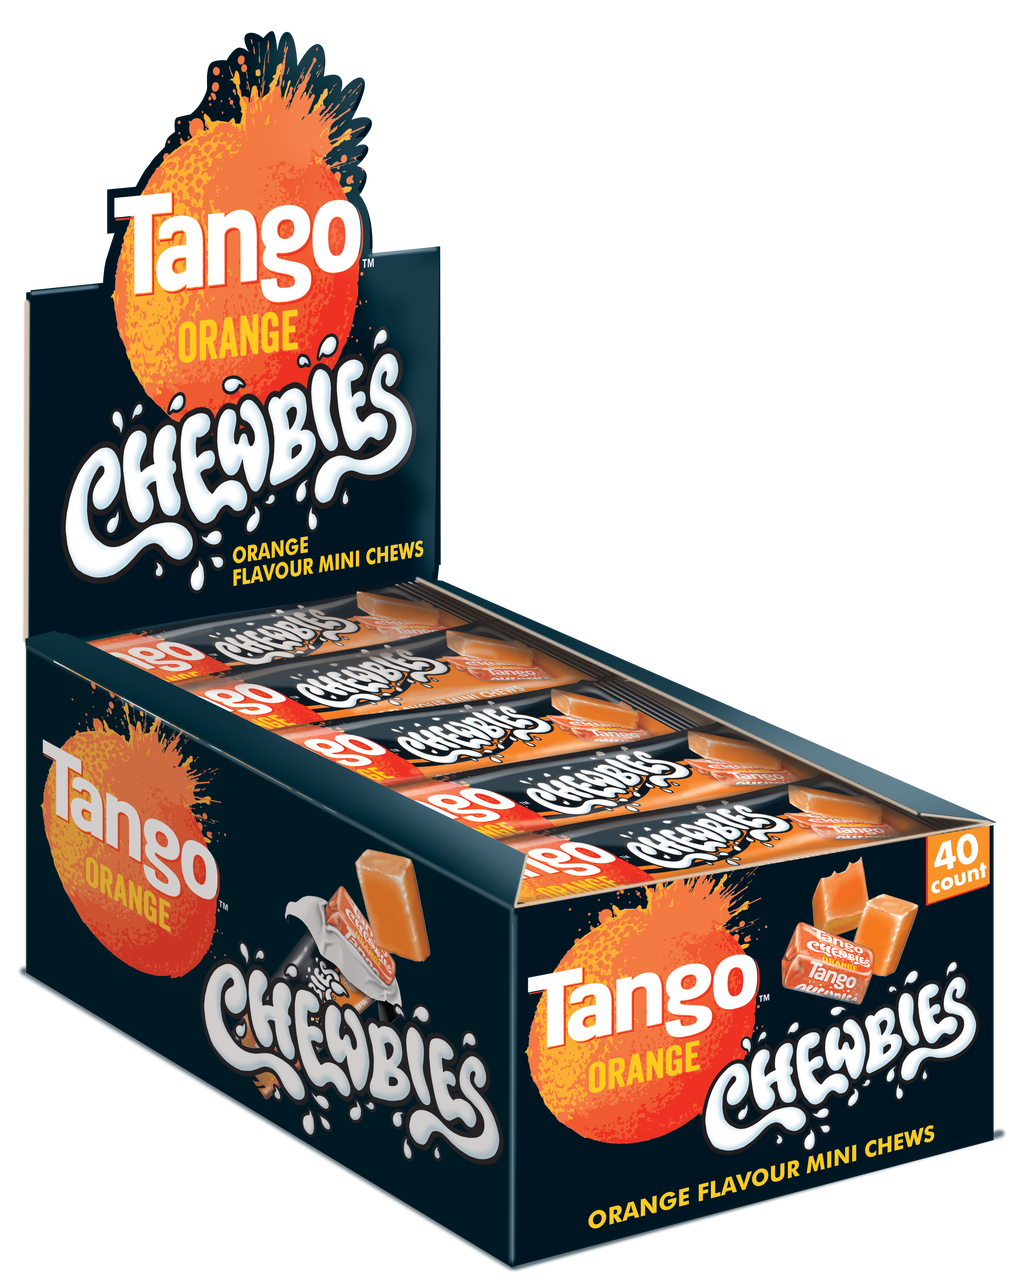 Tango Orange Chewbies 40 x 30g